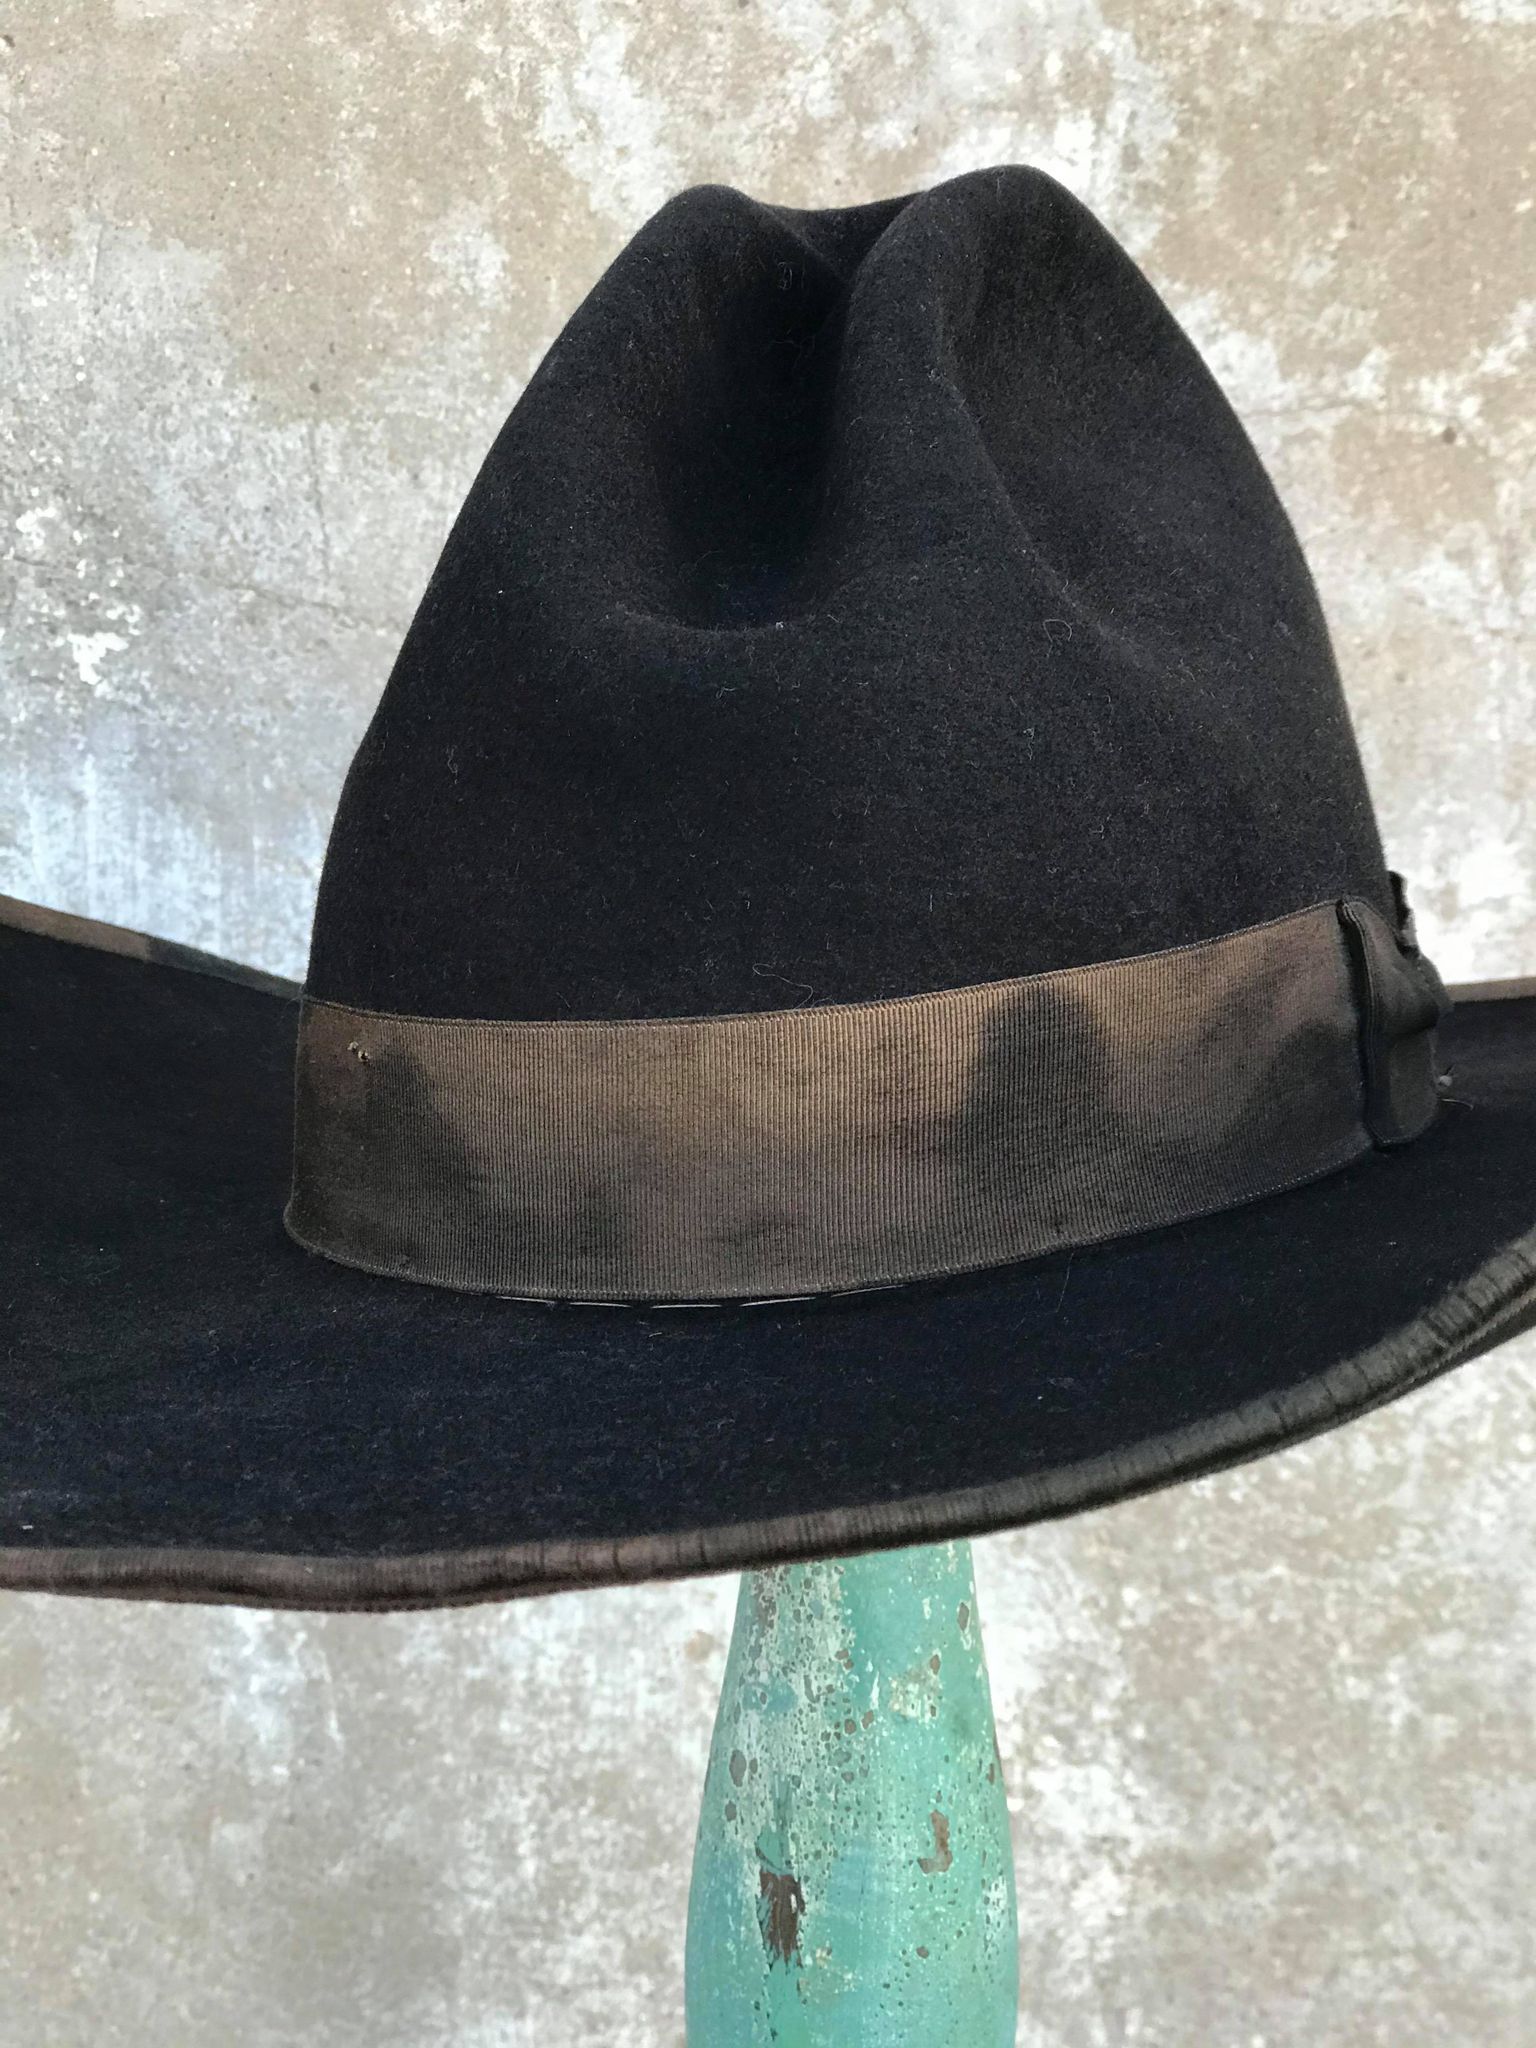 Vintage "Boss of the Plains" Cowboy Hat